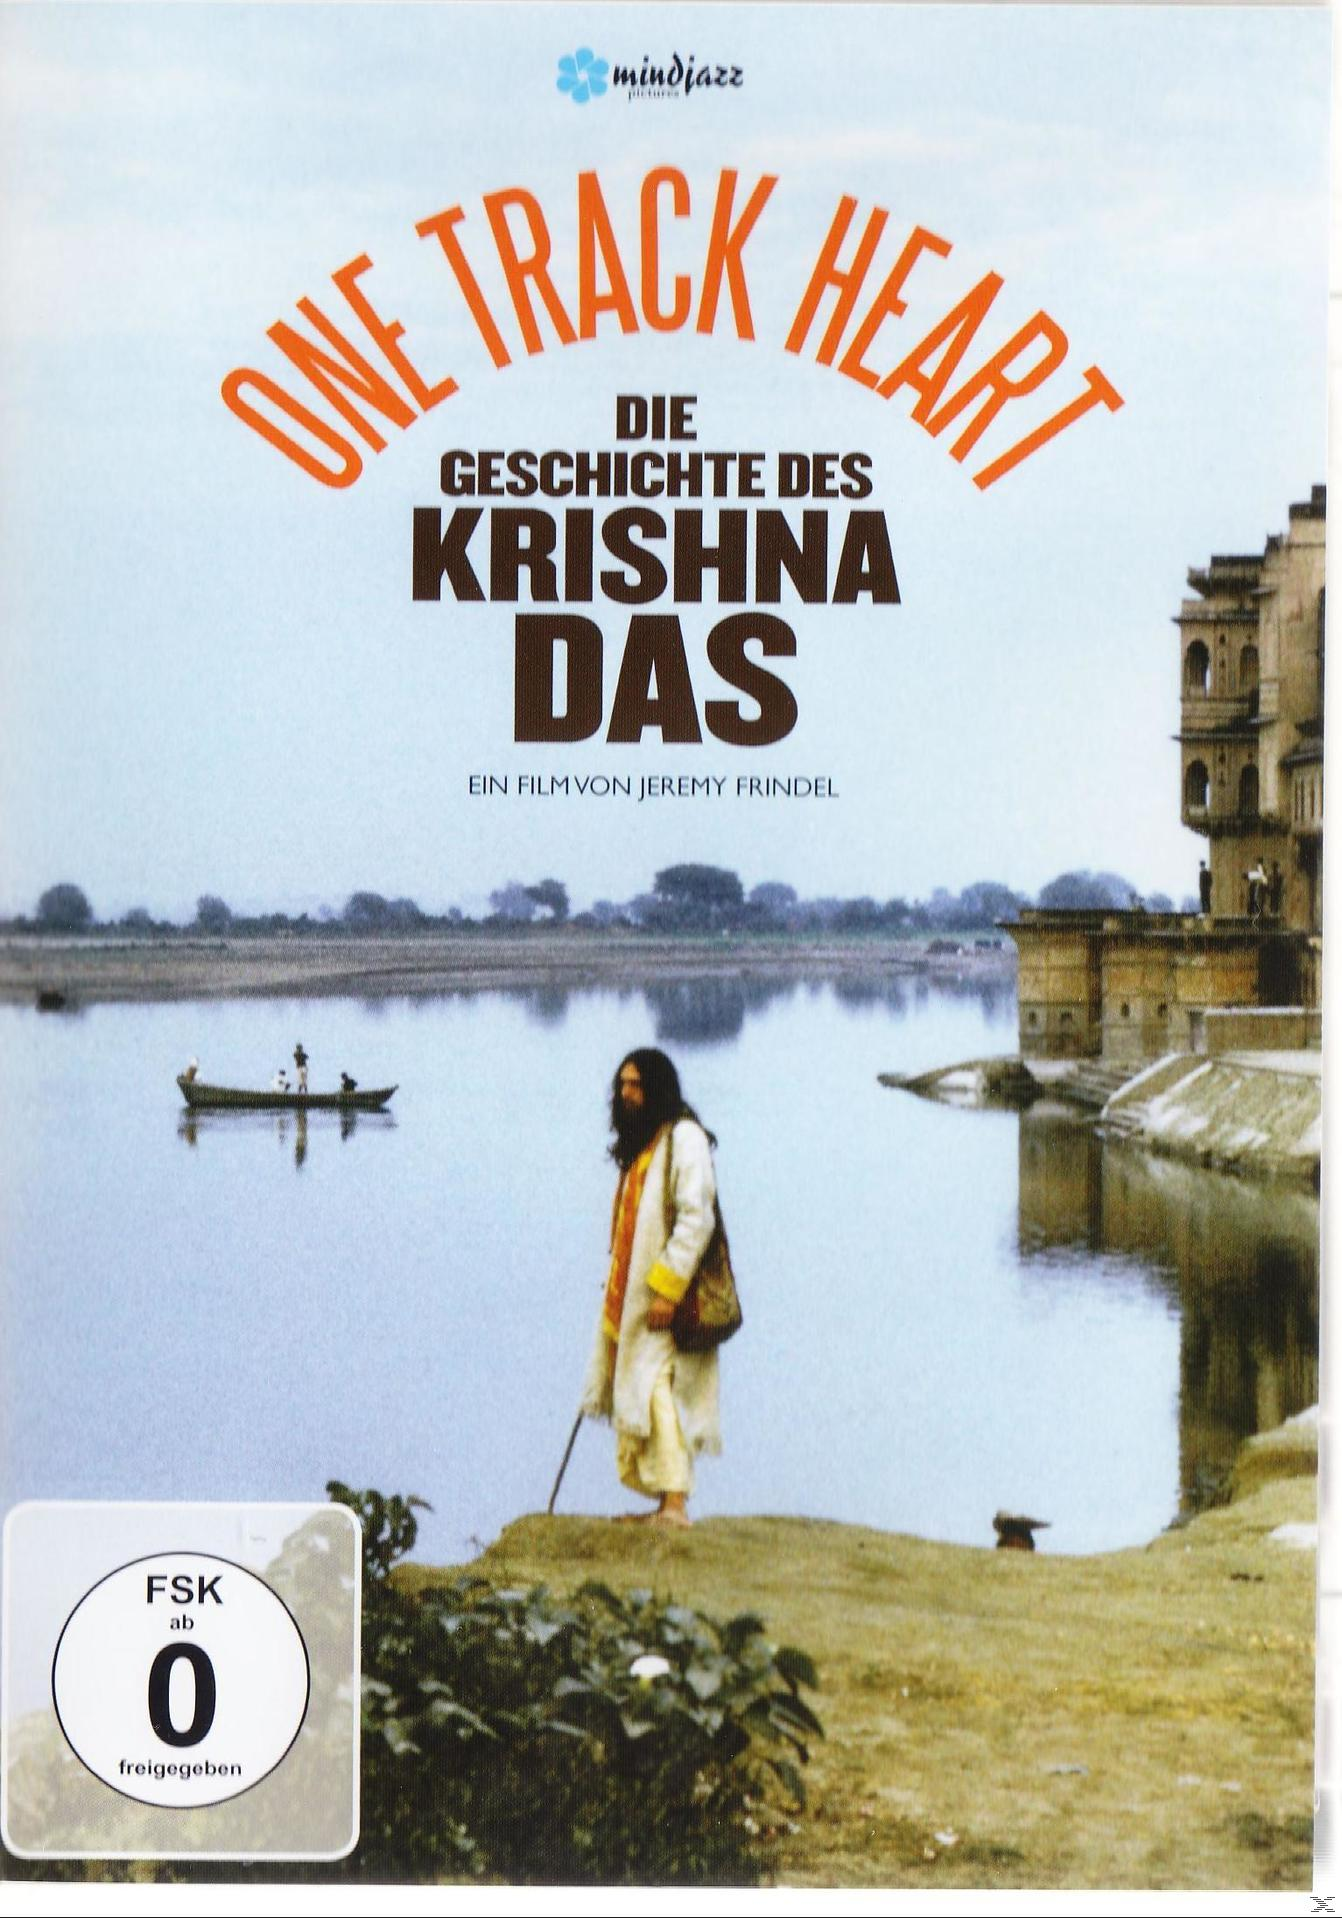 GESCHICHTE DES DVD DAS - KRISHNA TRACK HEART DIE ONE